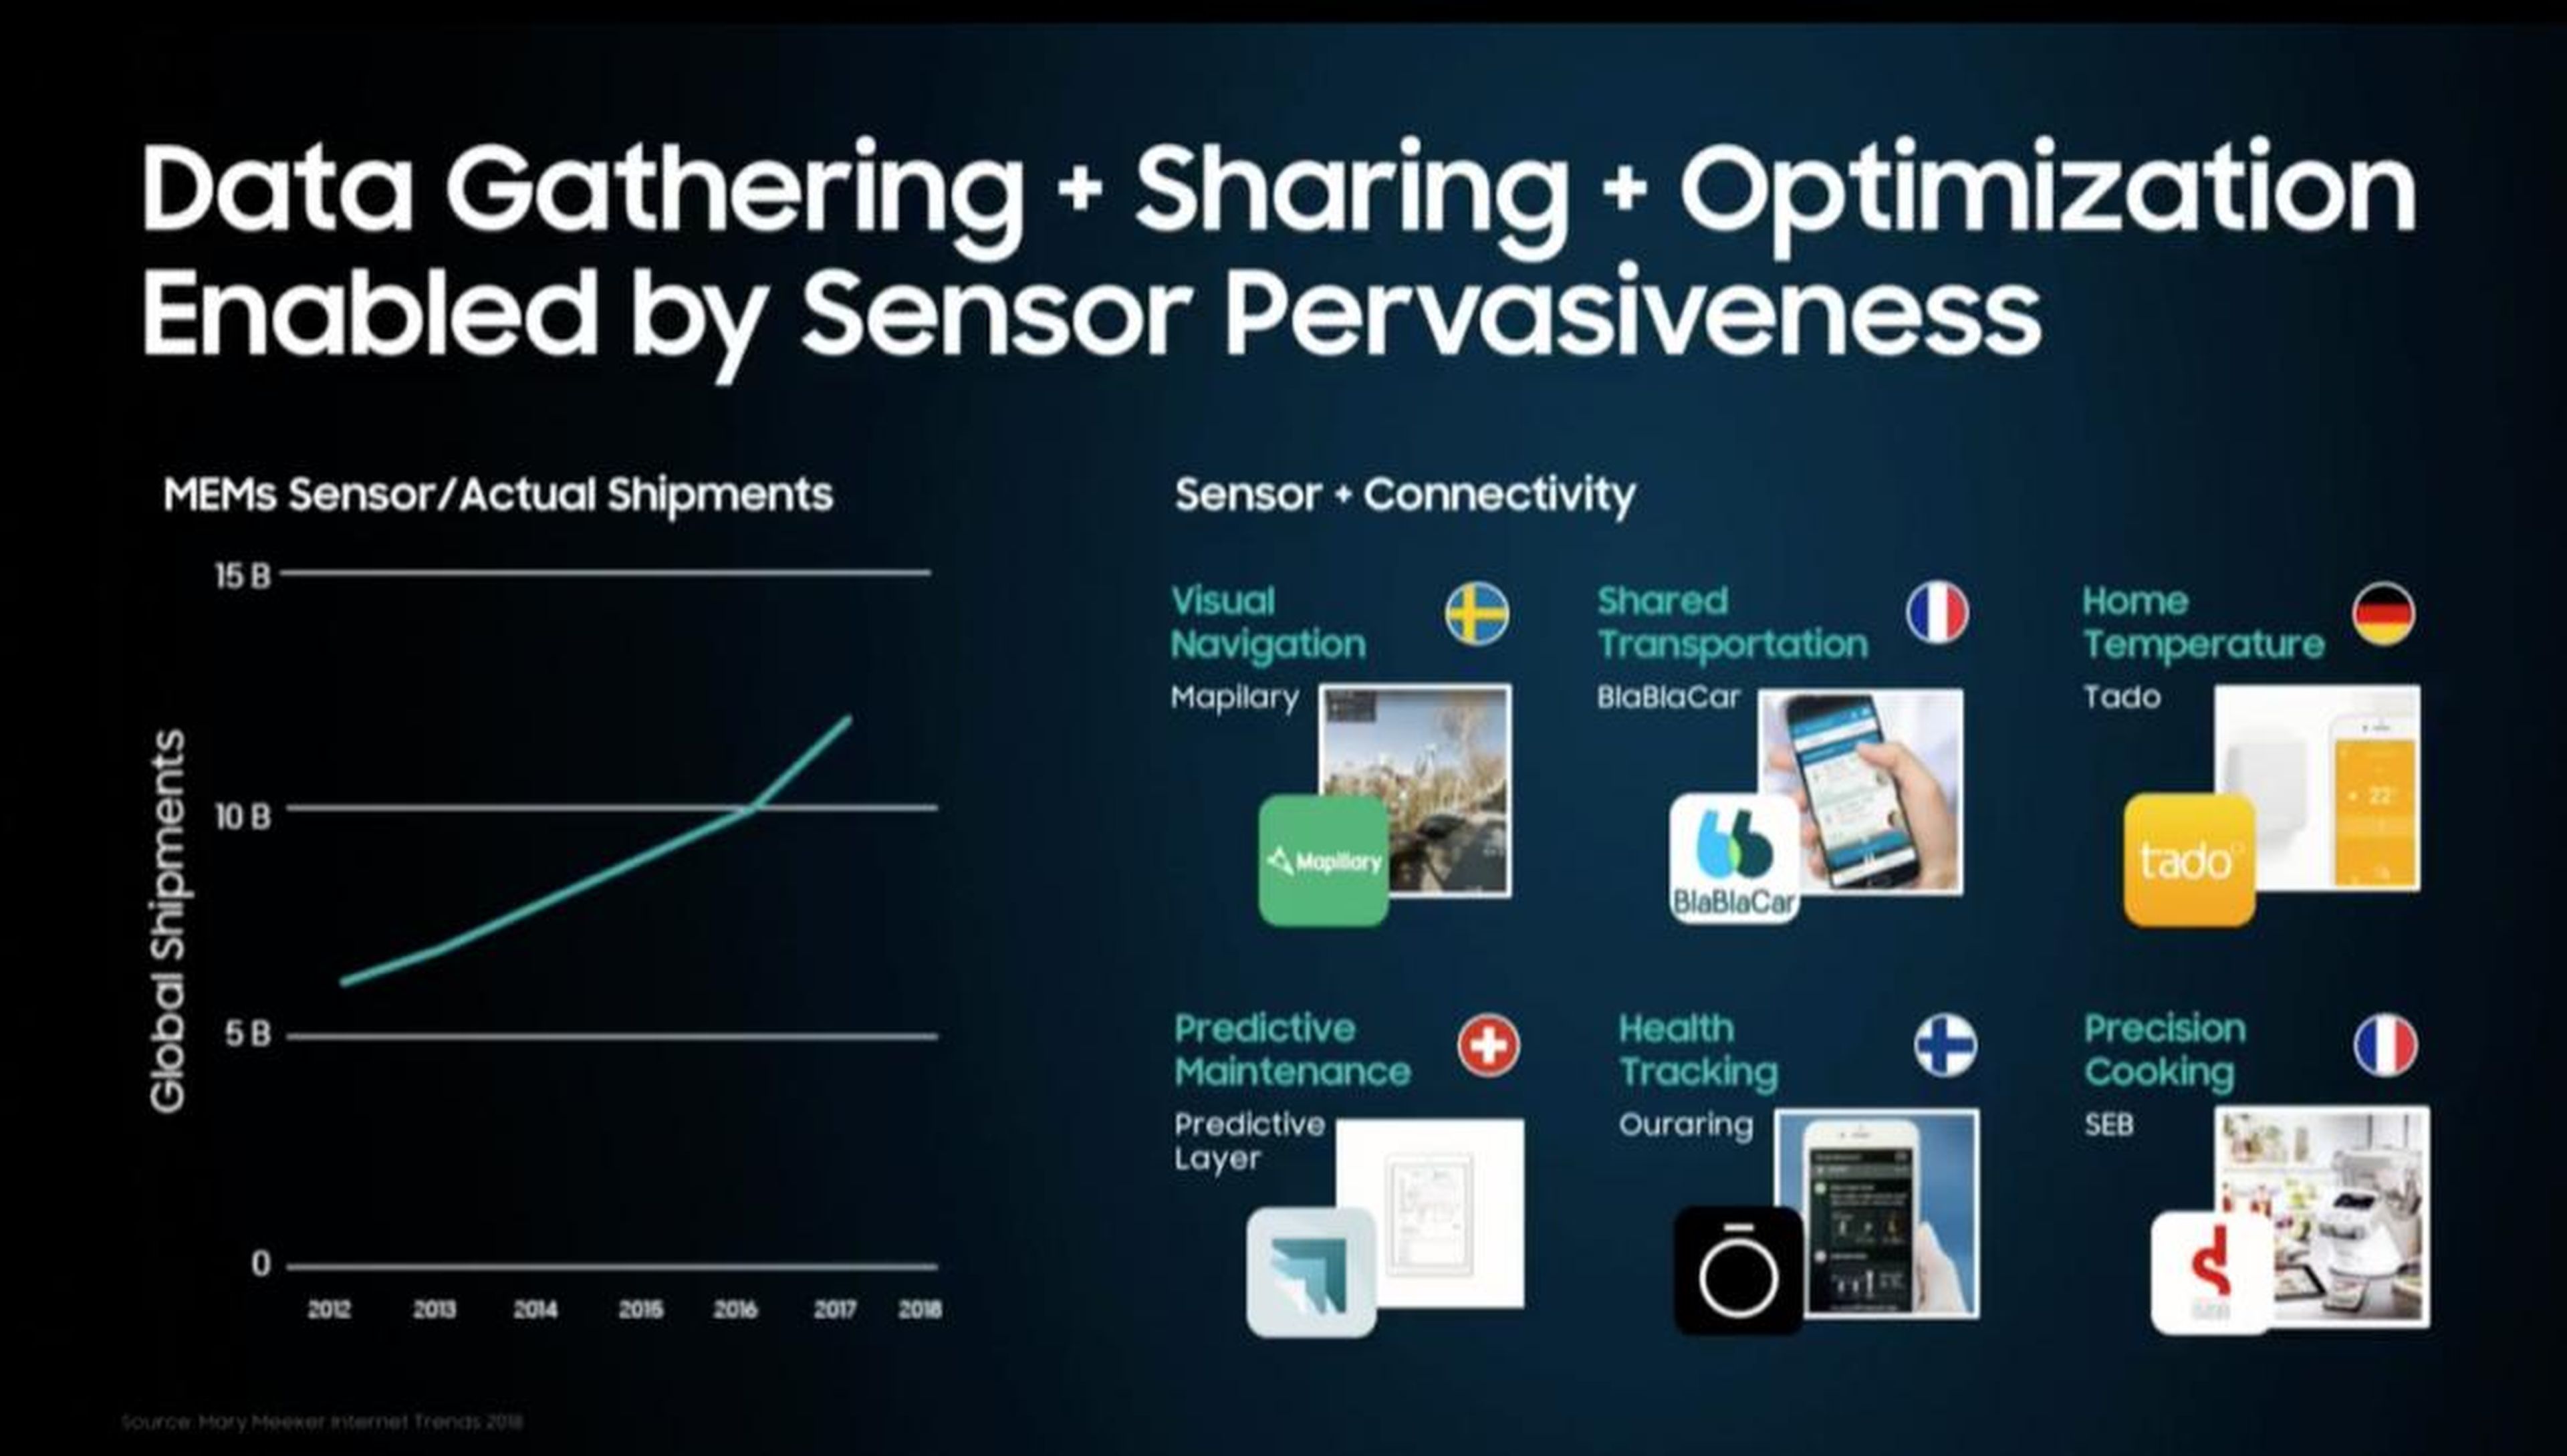 Samsung imagina un mundo de sensores omnipresentes que rastrean todo lo que haces.